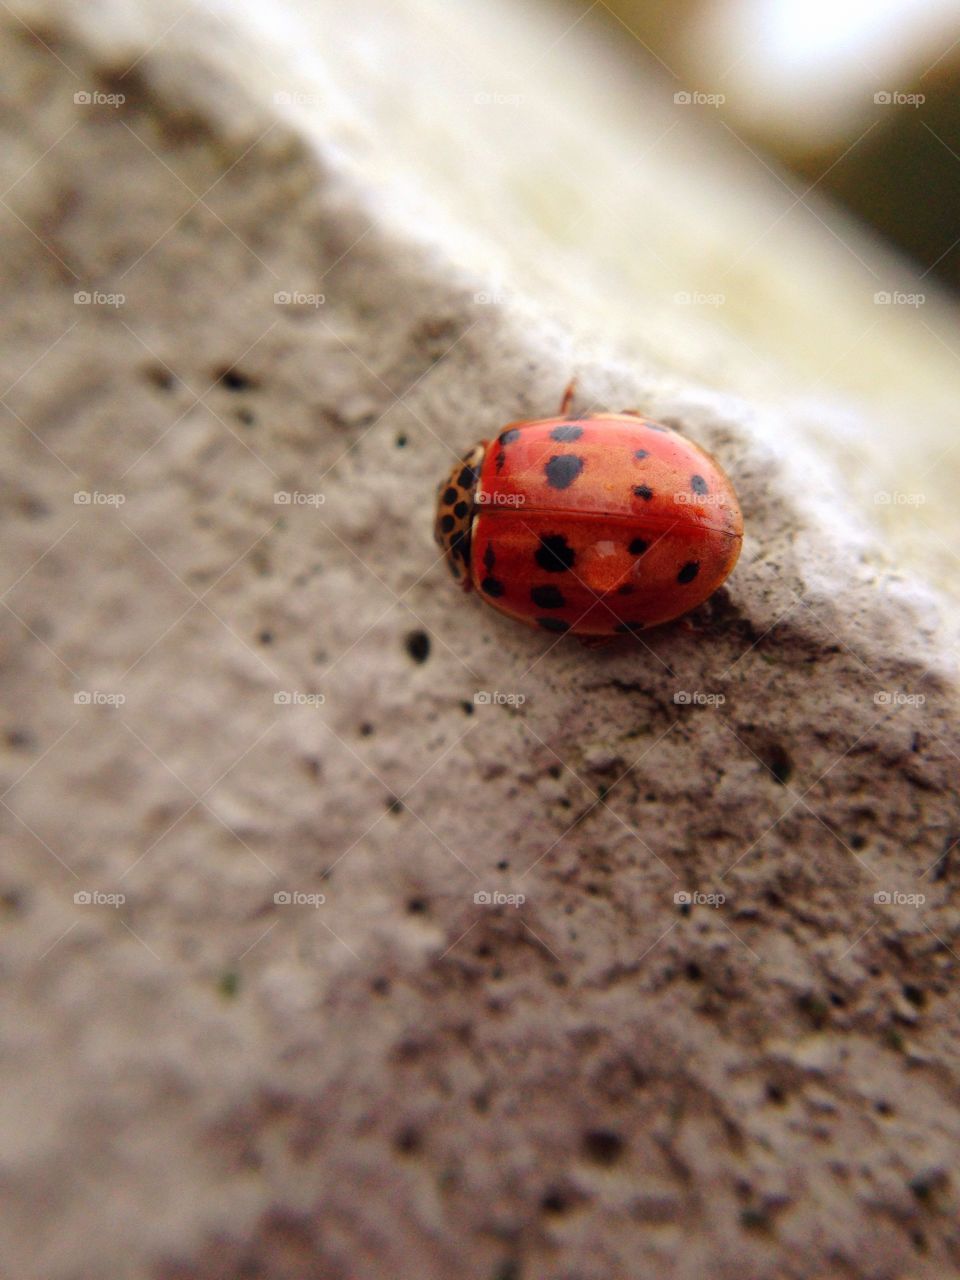 Closeup of a ladybug